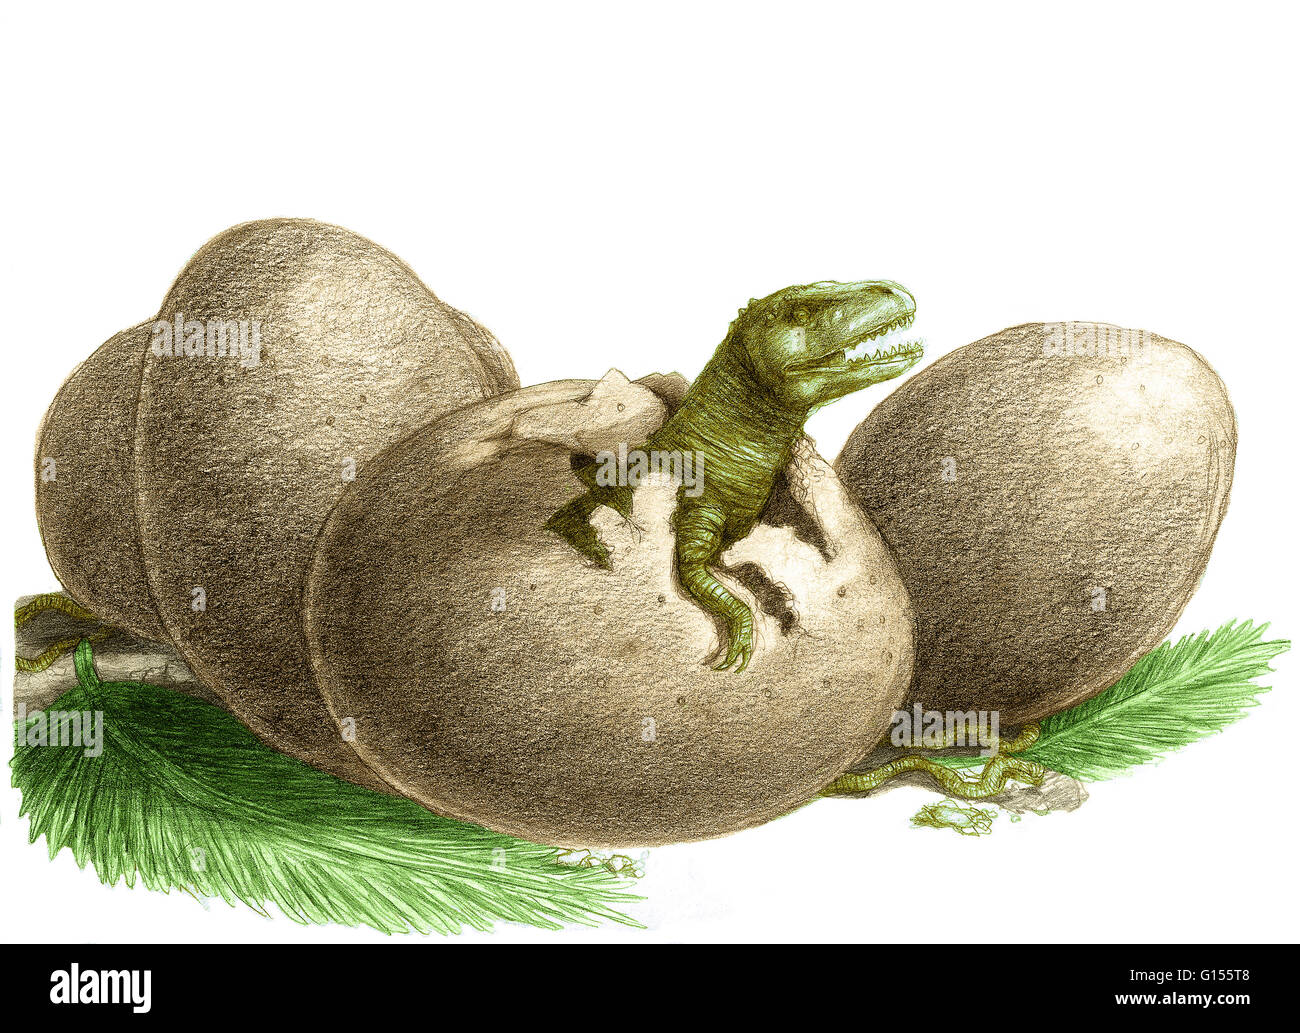 Uovo di dinosauro immagini e fotografie stock ad alta risoluzione - Alamy